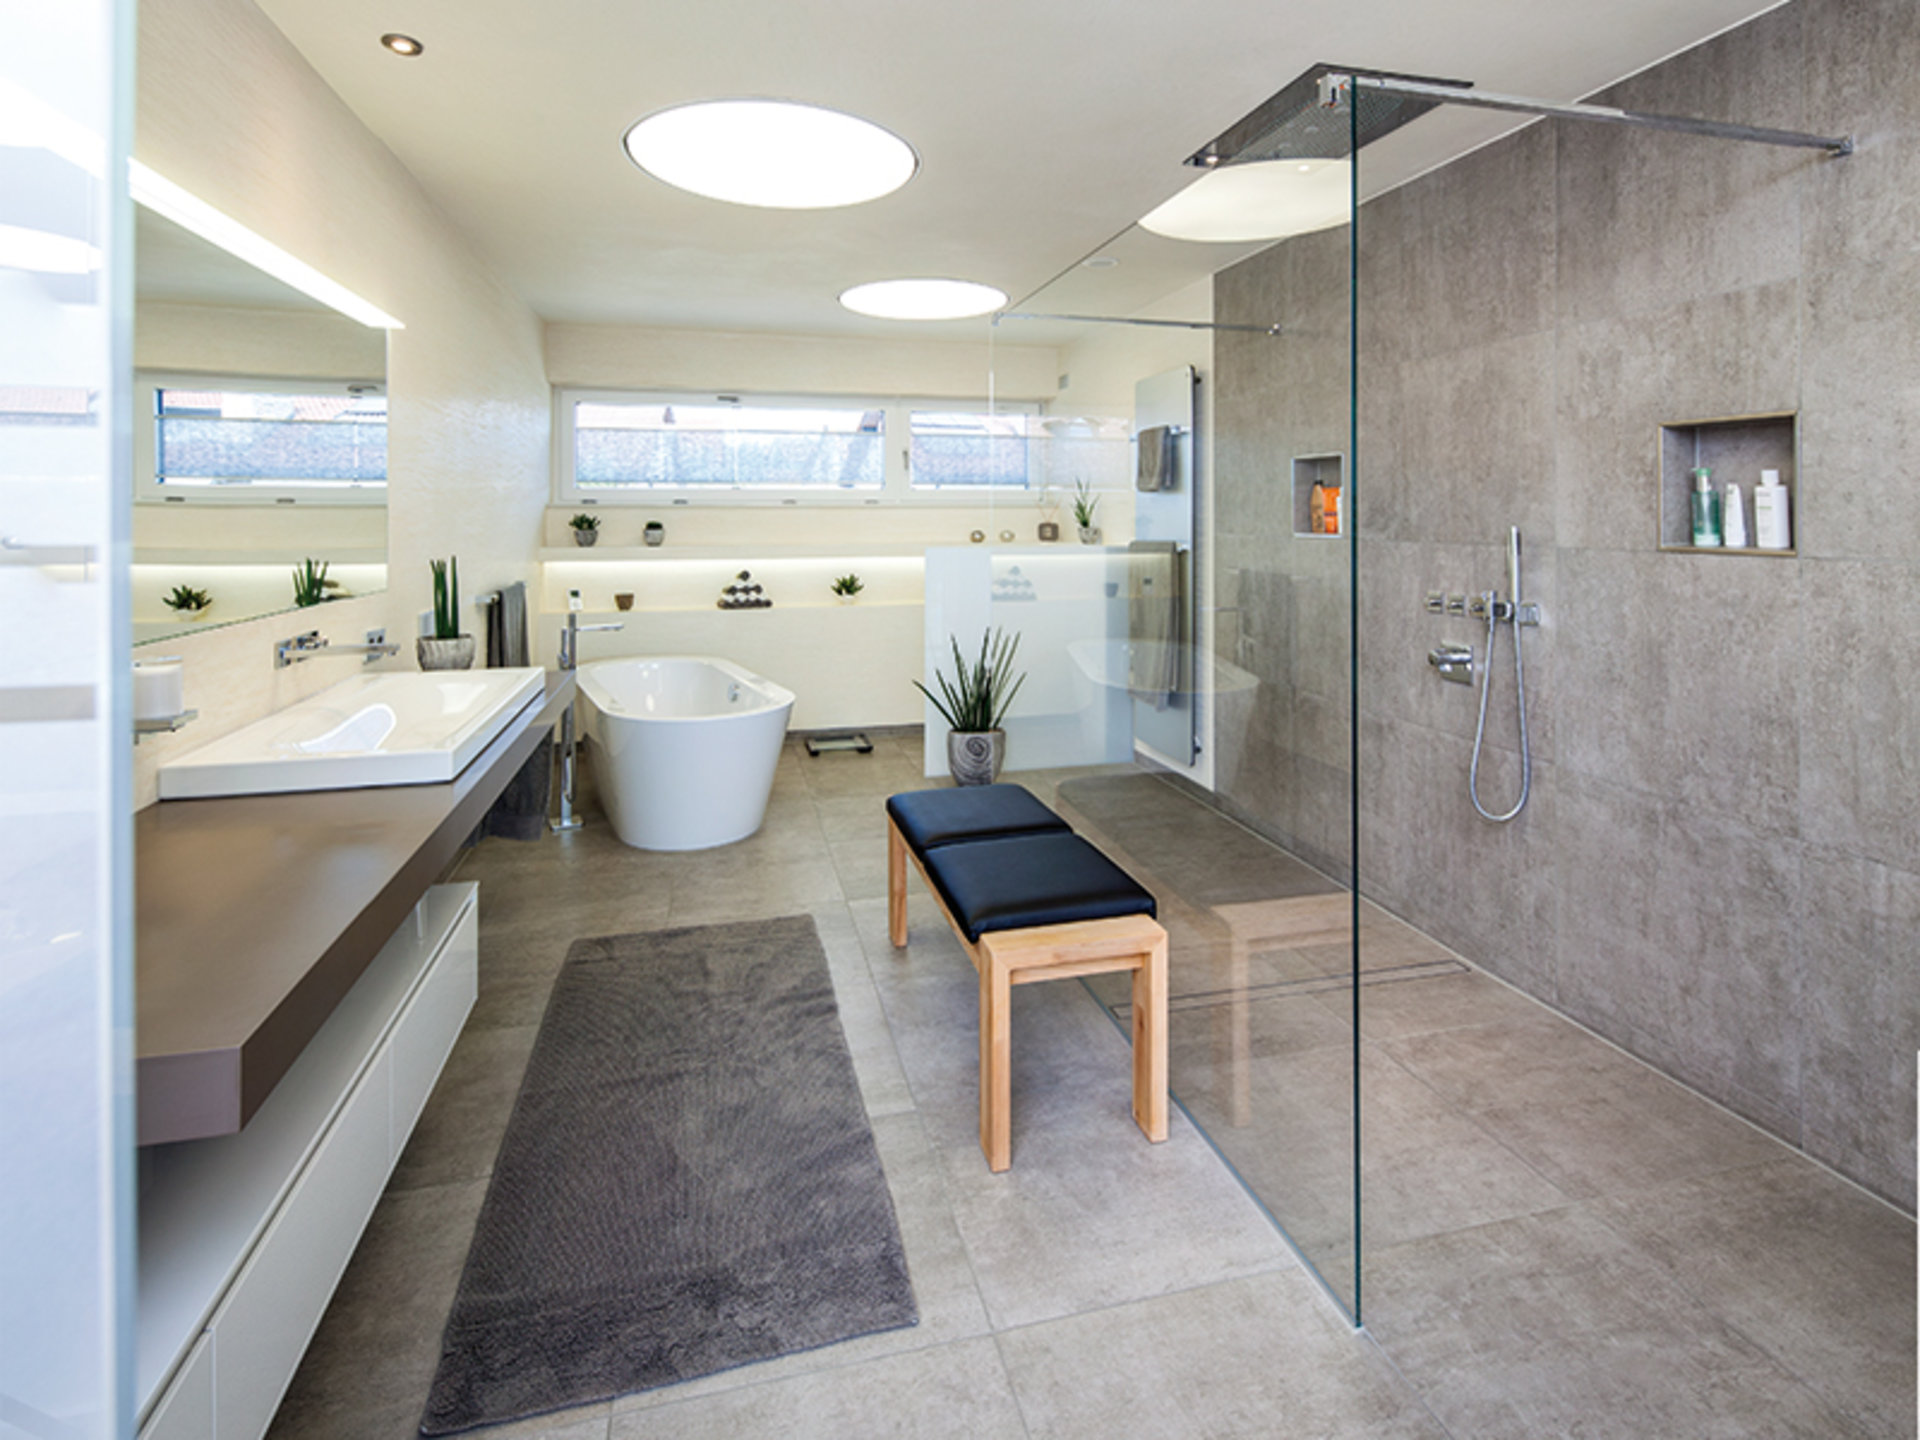 BAUMEISTER-HAUS Uthoff – Offenheit und Luftigkeit prägen auch das Lebensgefühl im Obergeschoss. Hier das großzügige Wohnbad mit Doppelwaschtisch, geräumiger Dusche und freistehender Badewanne